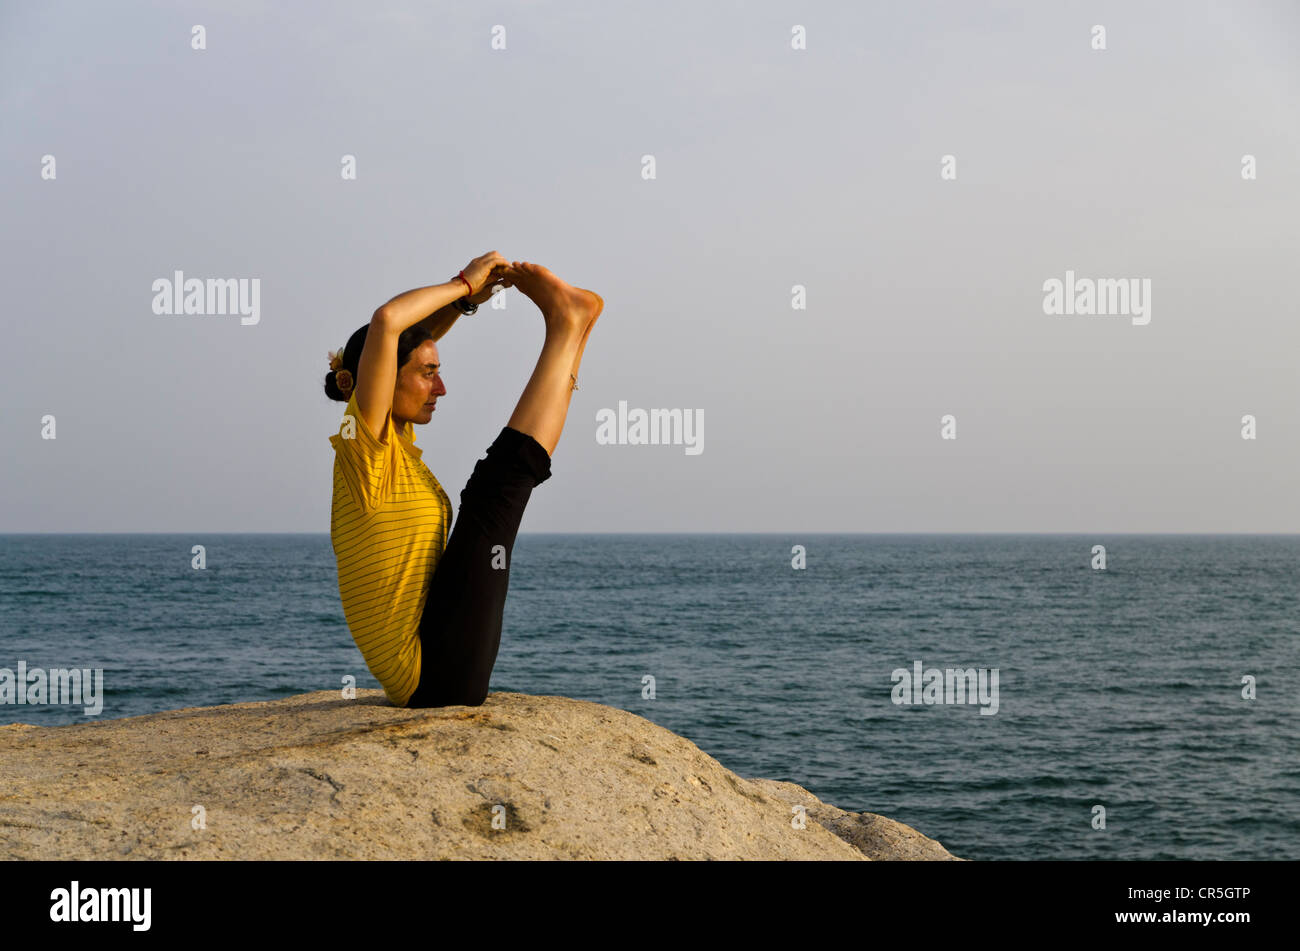 Frau in einem Yoga zu positionieren, eine Variation des Paschimothanasana, direkt am Meer in Kanyakumari, Tamil Nadu, Indien, Asien Stockfoto